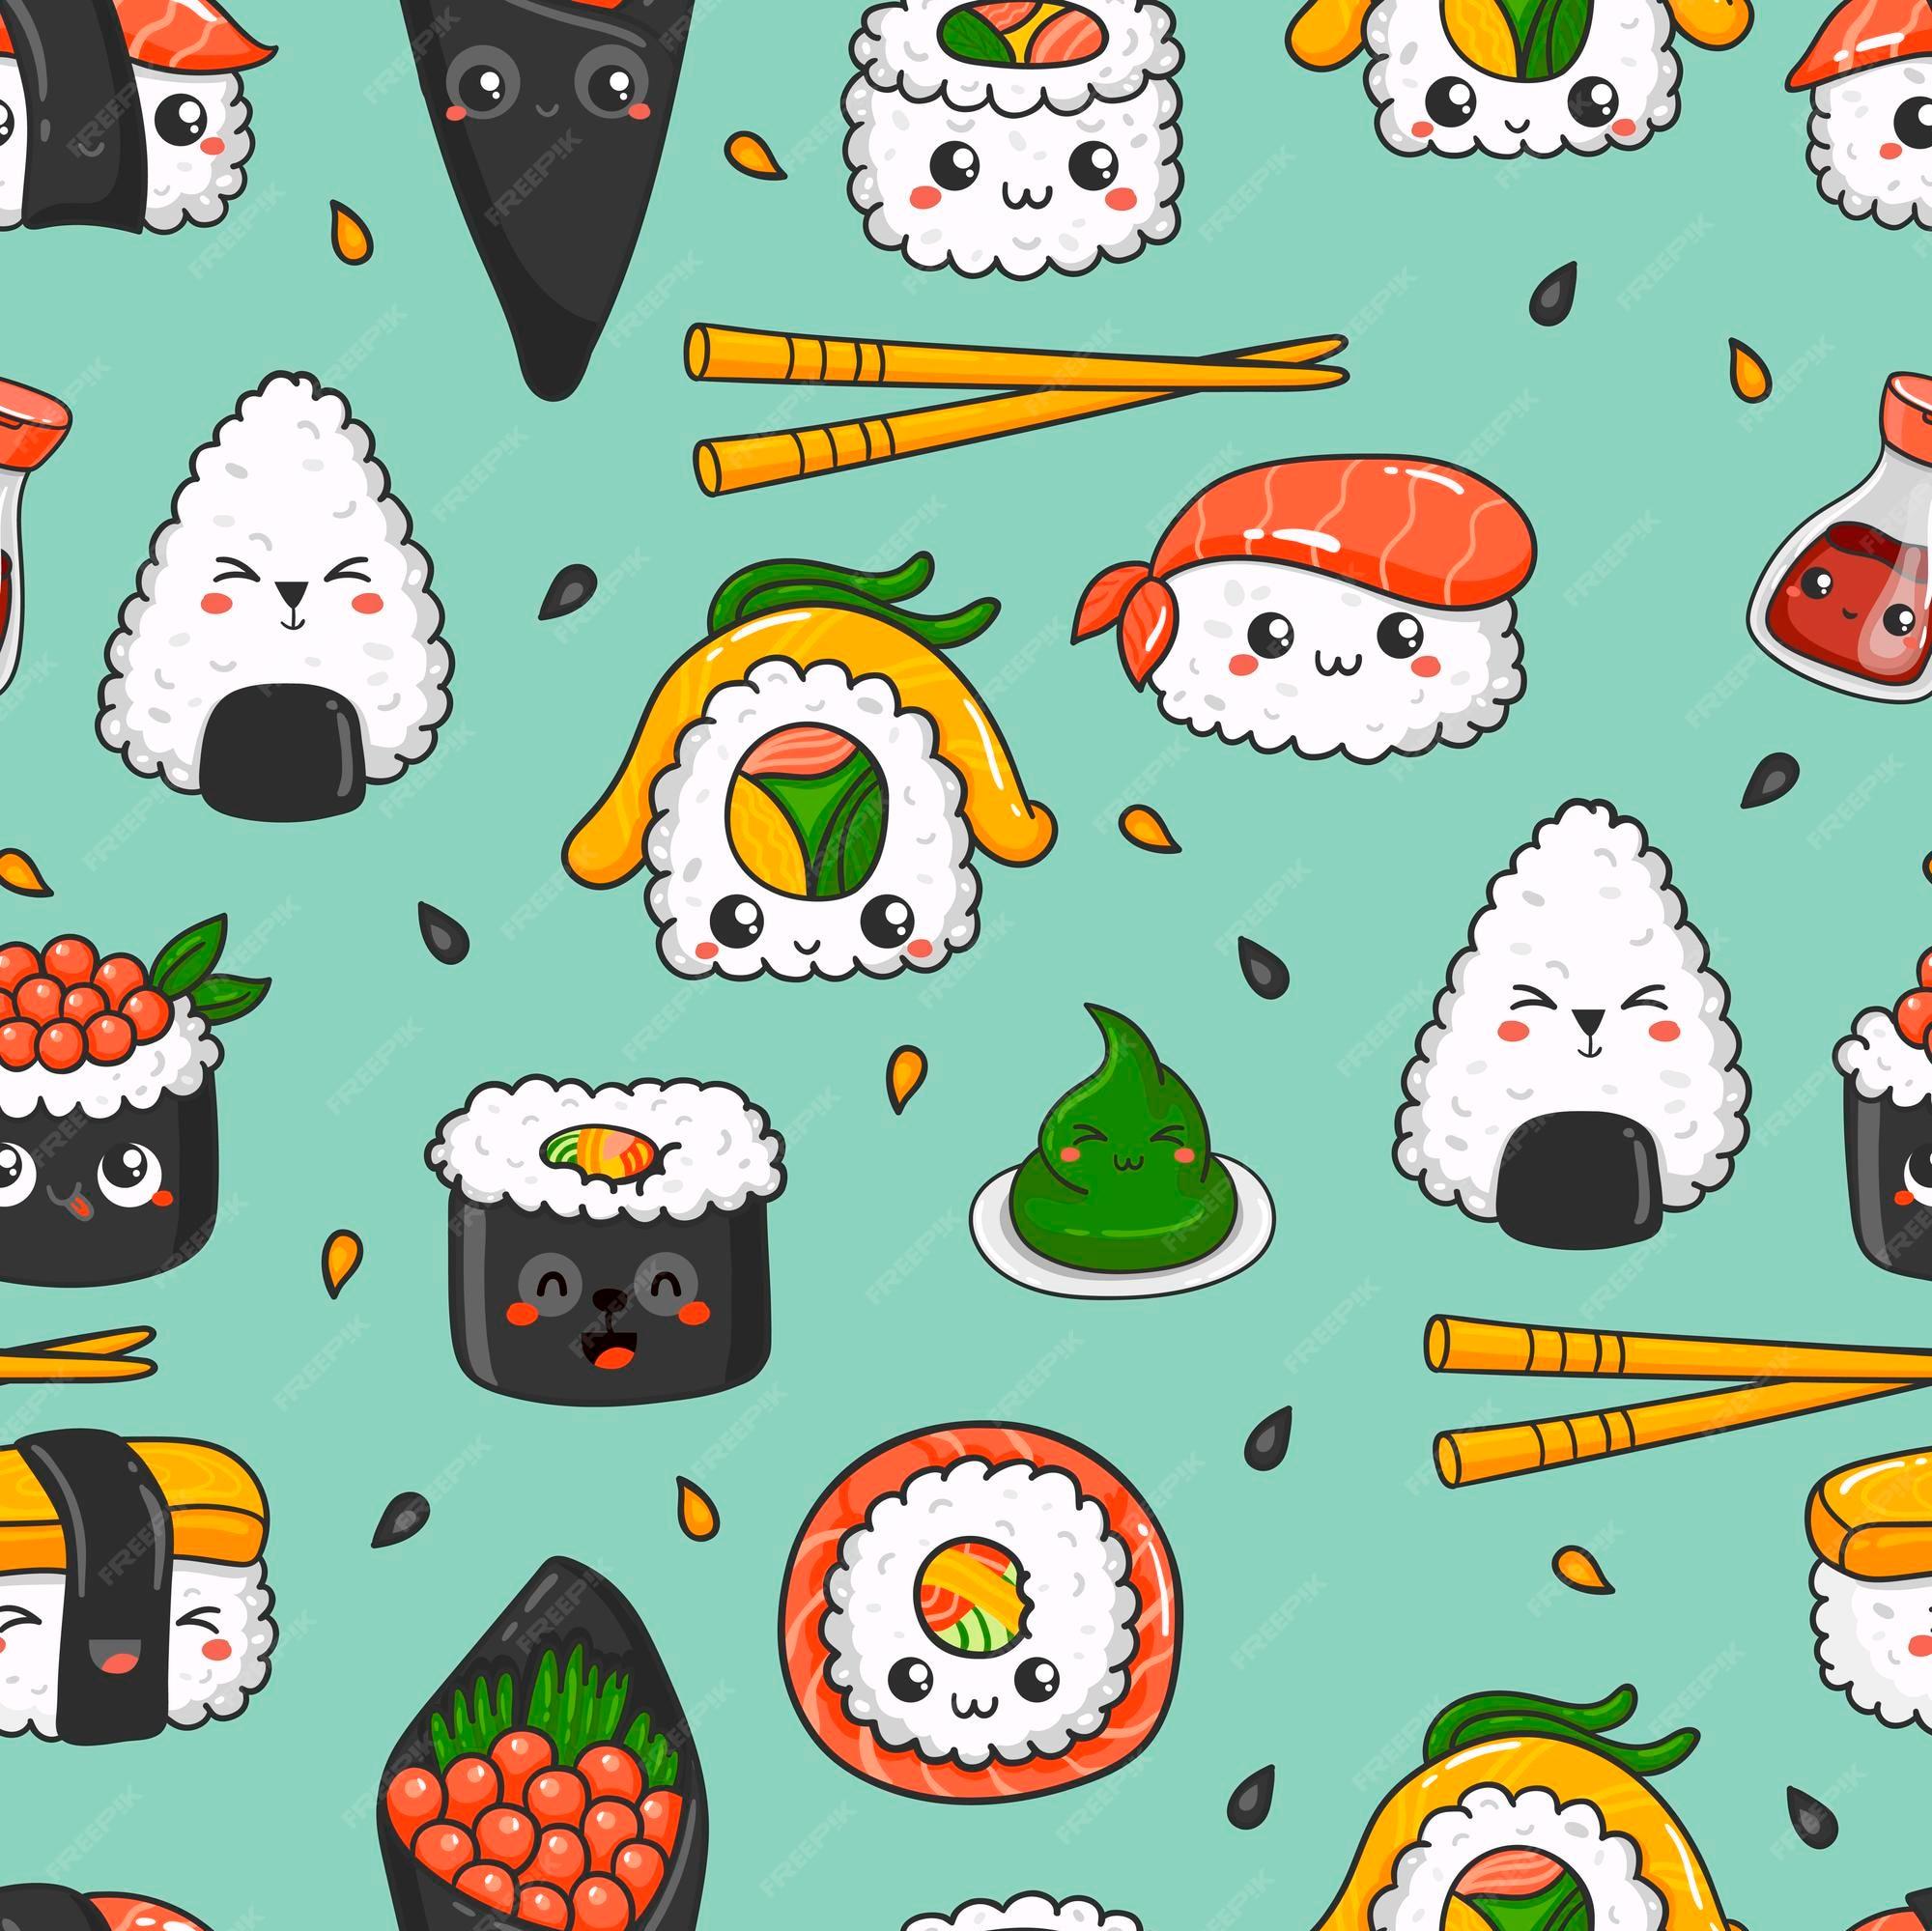 🔥 [45+] Cute Sushi Wallpapers | WallpaperSafari